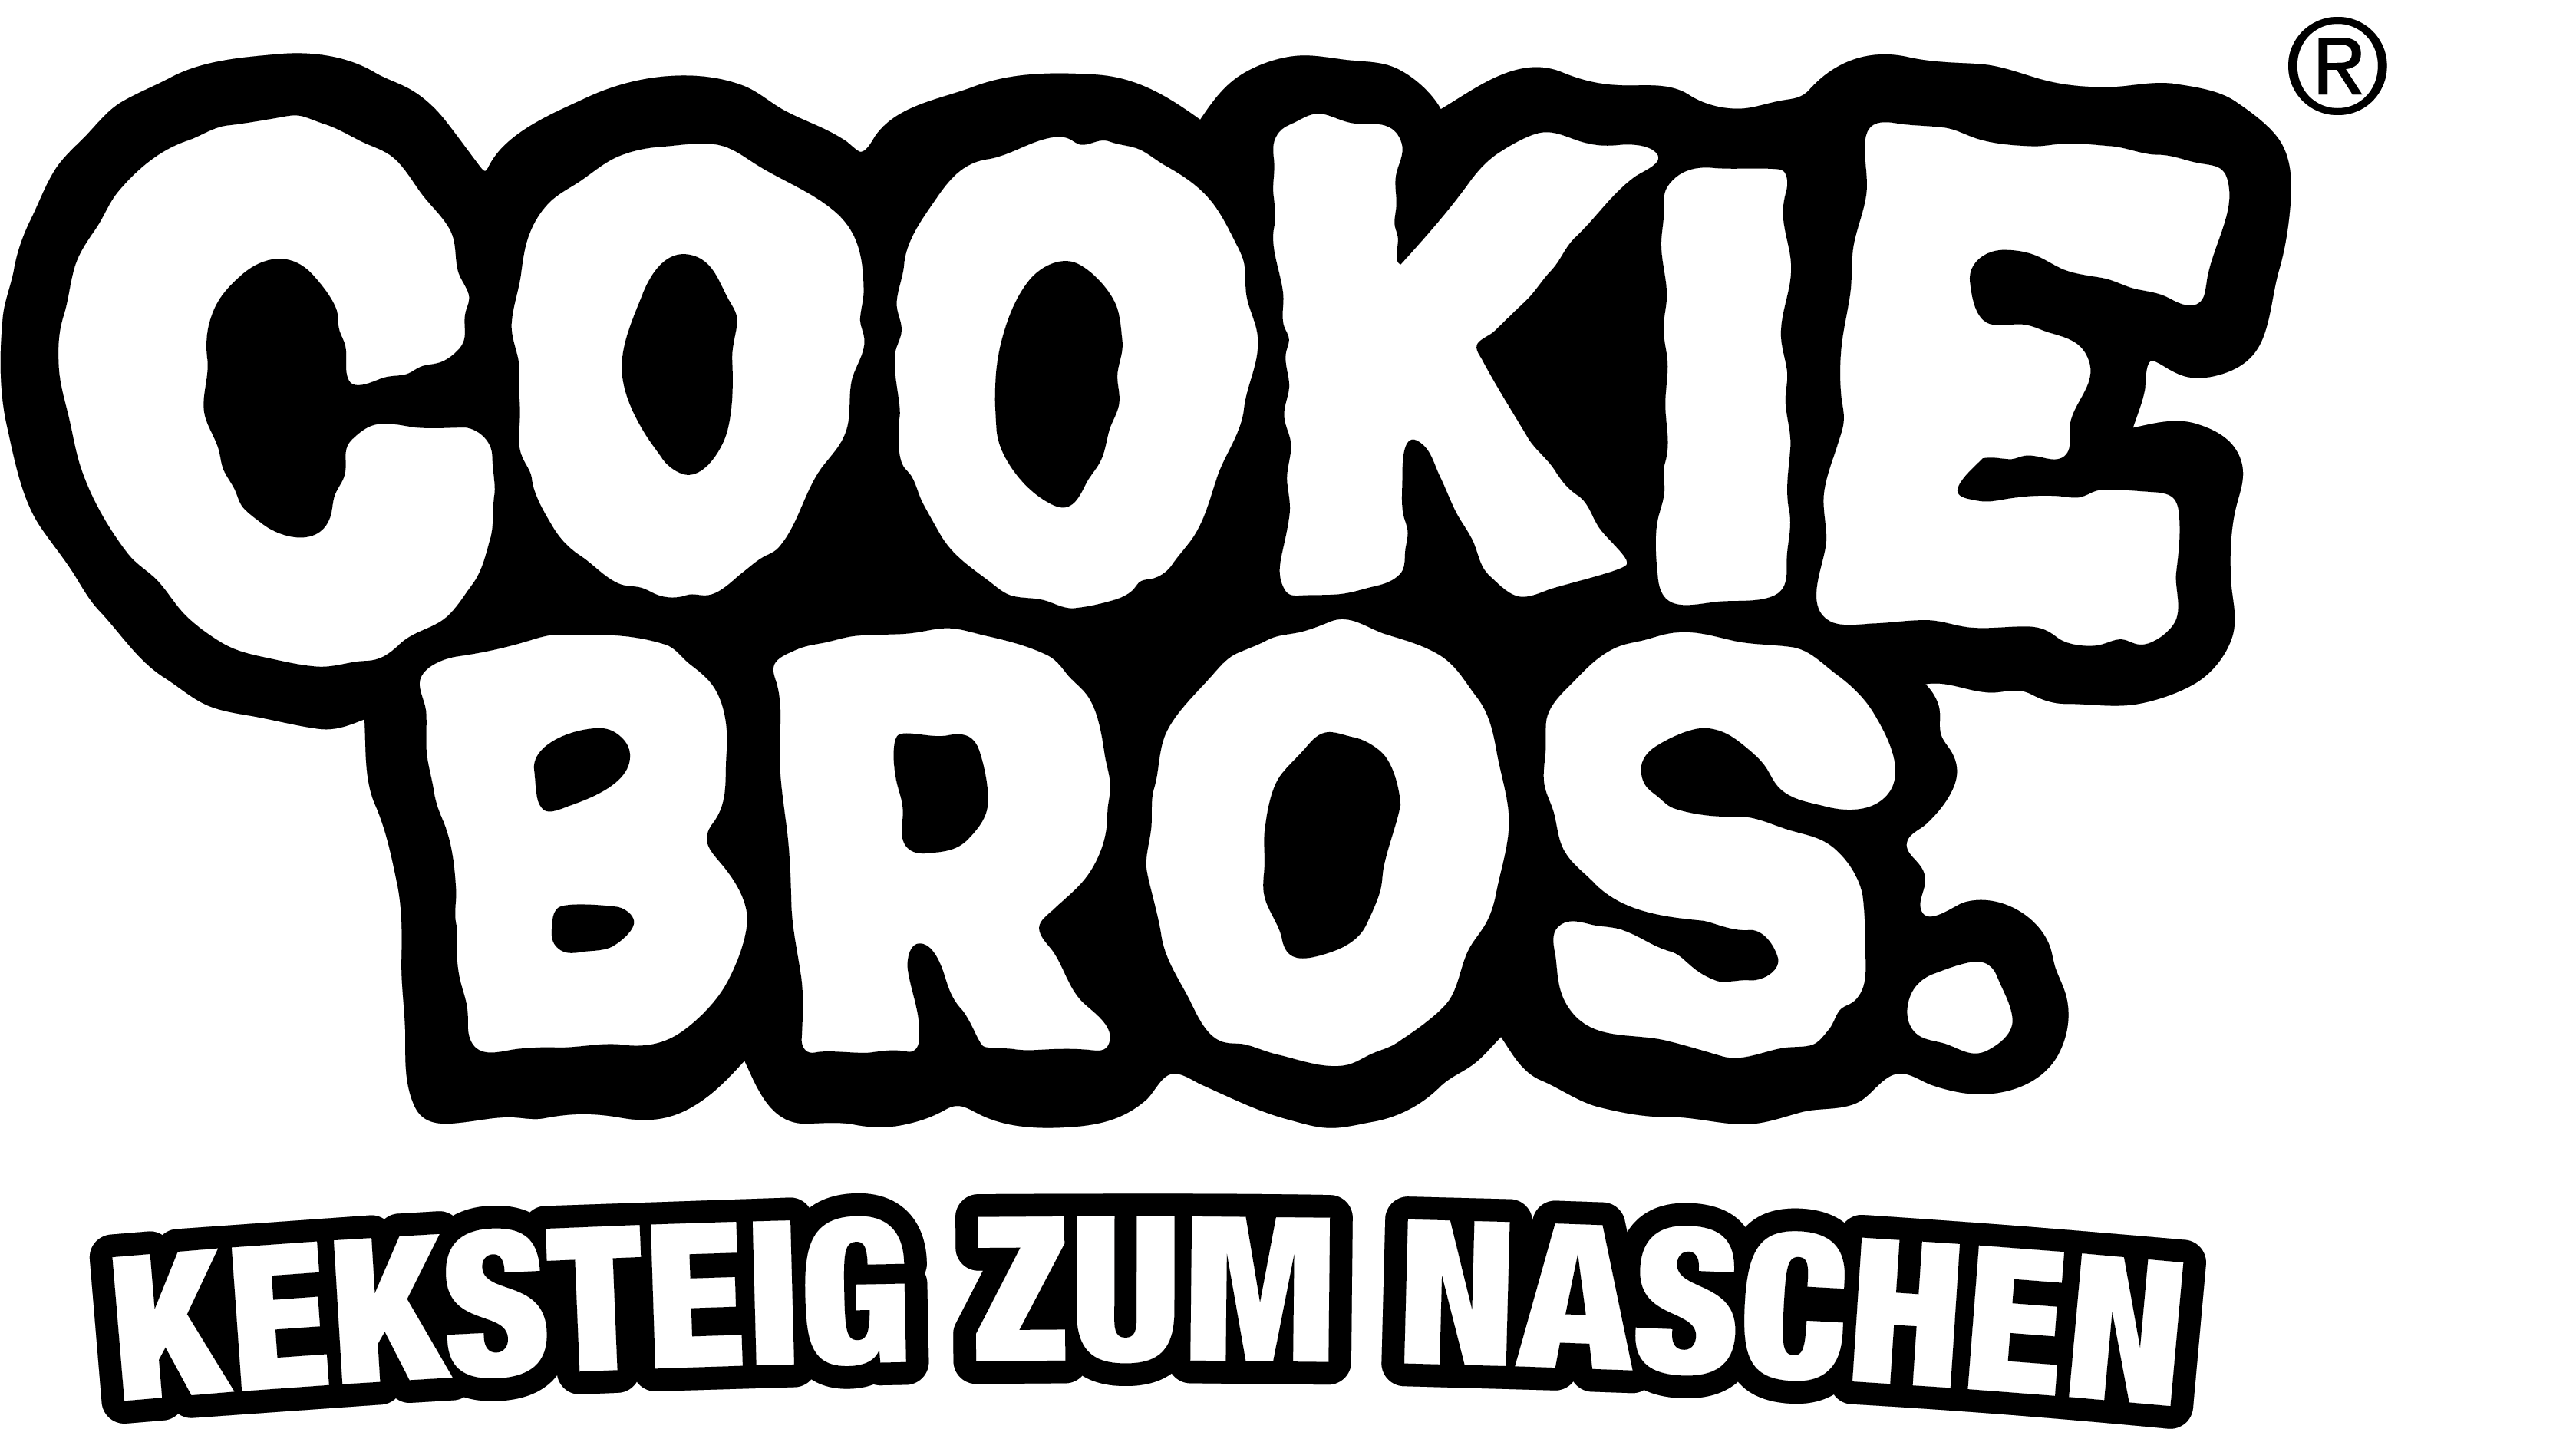 Cookie Bros.